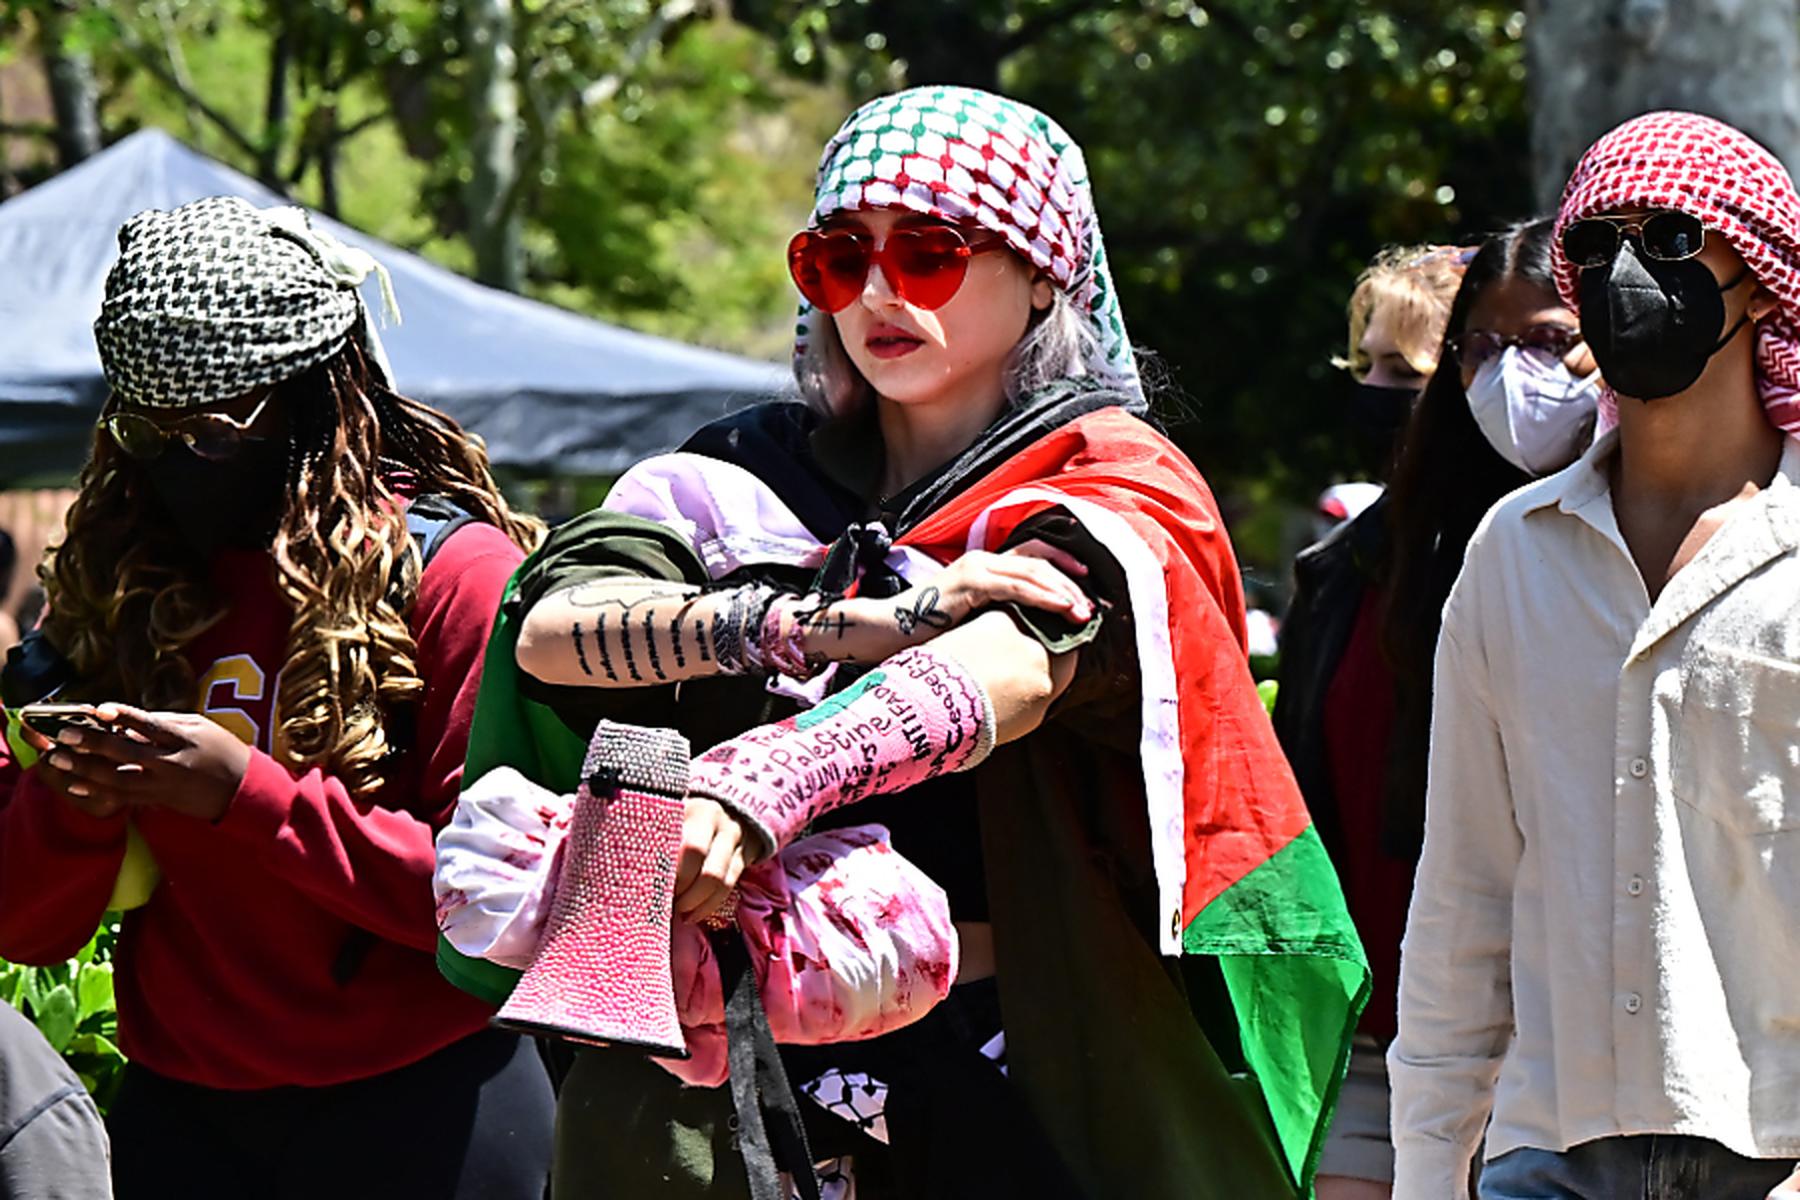 Los Angeles: Gaza-Proteste an US-Unis: Abschlussfeier wird abgesagt